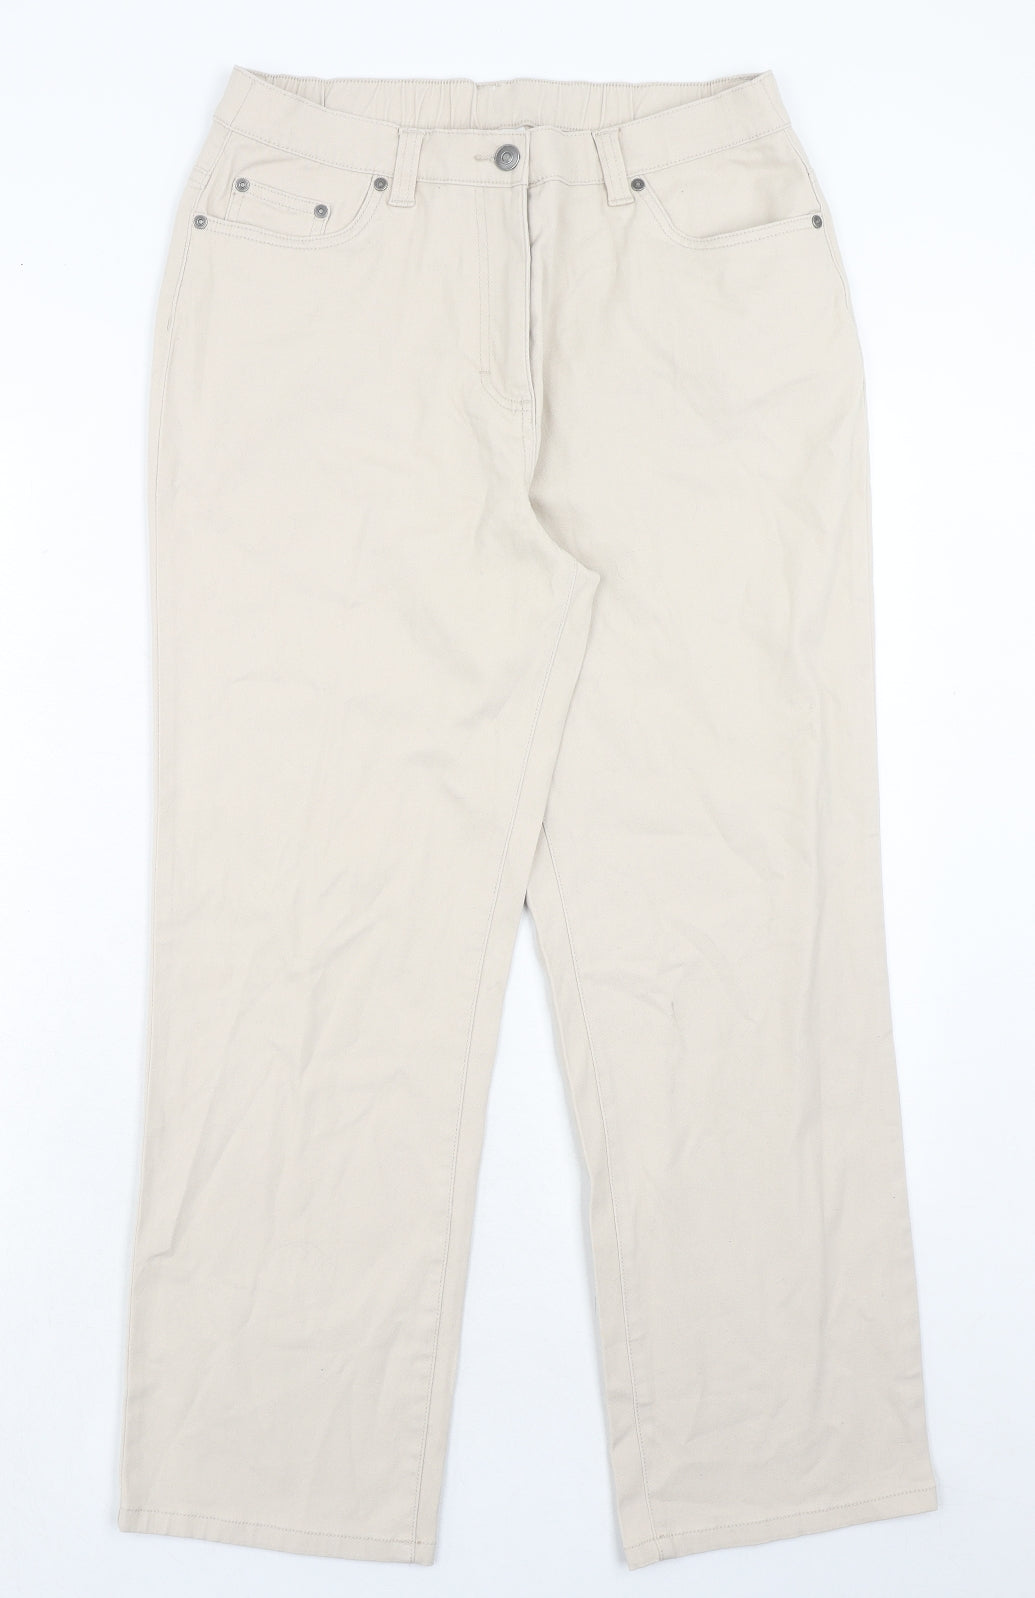 Damart Womens Beige Cotton Straight Jeans Size 12 Regular Zip